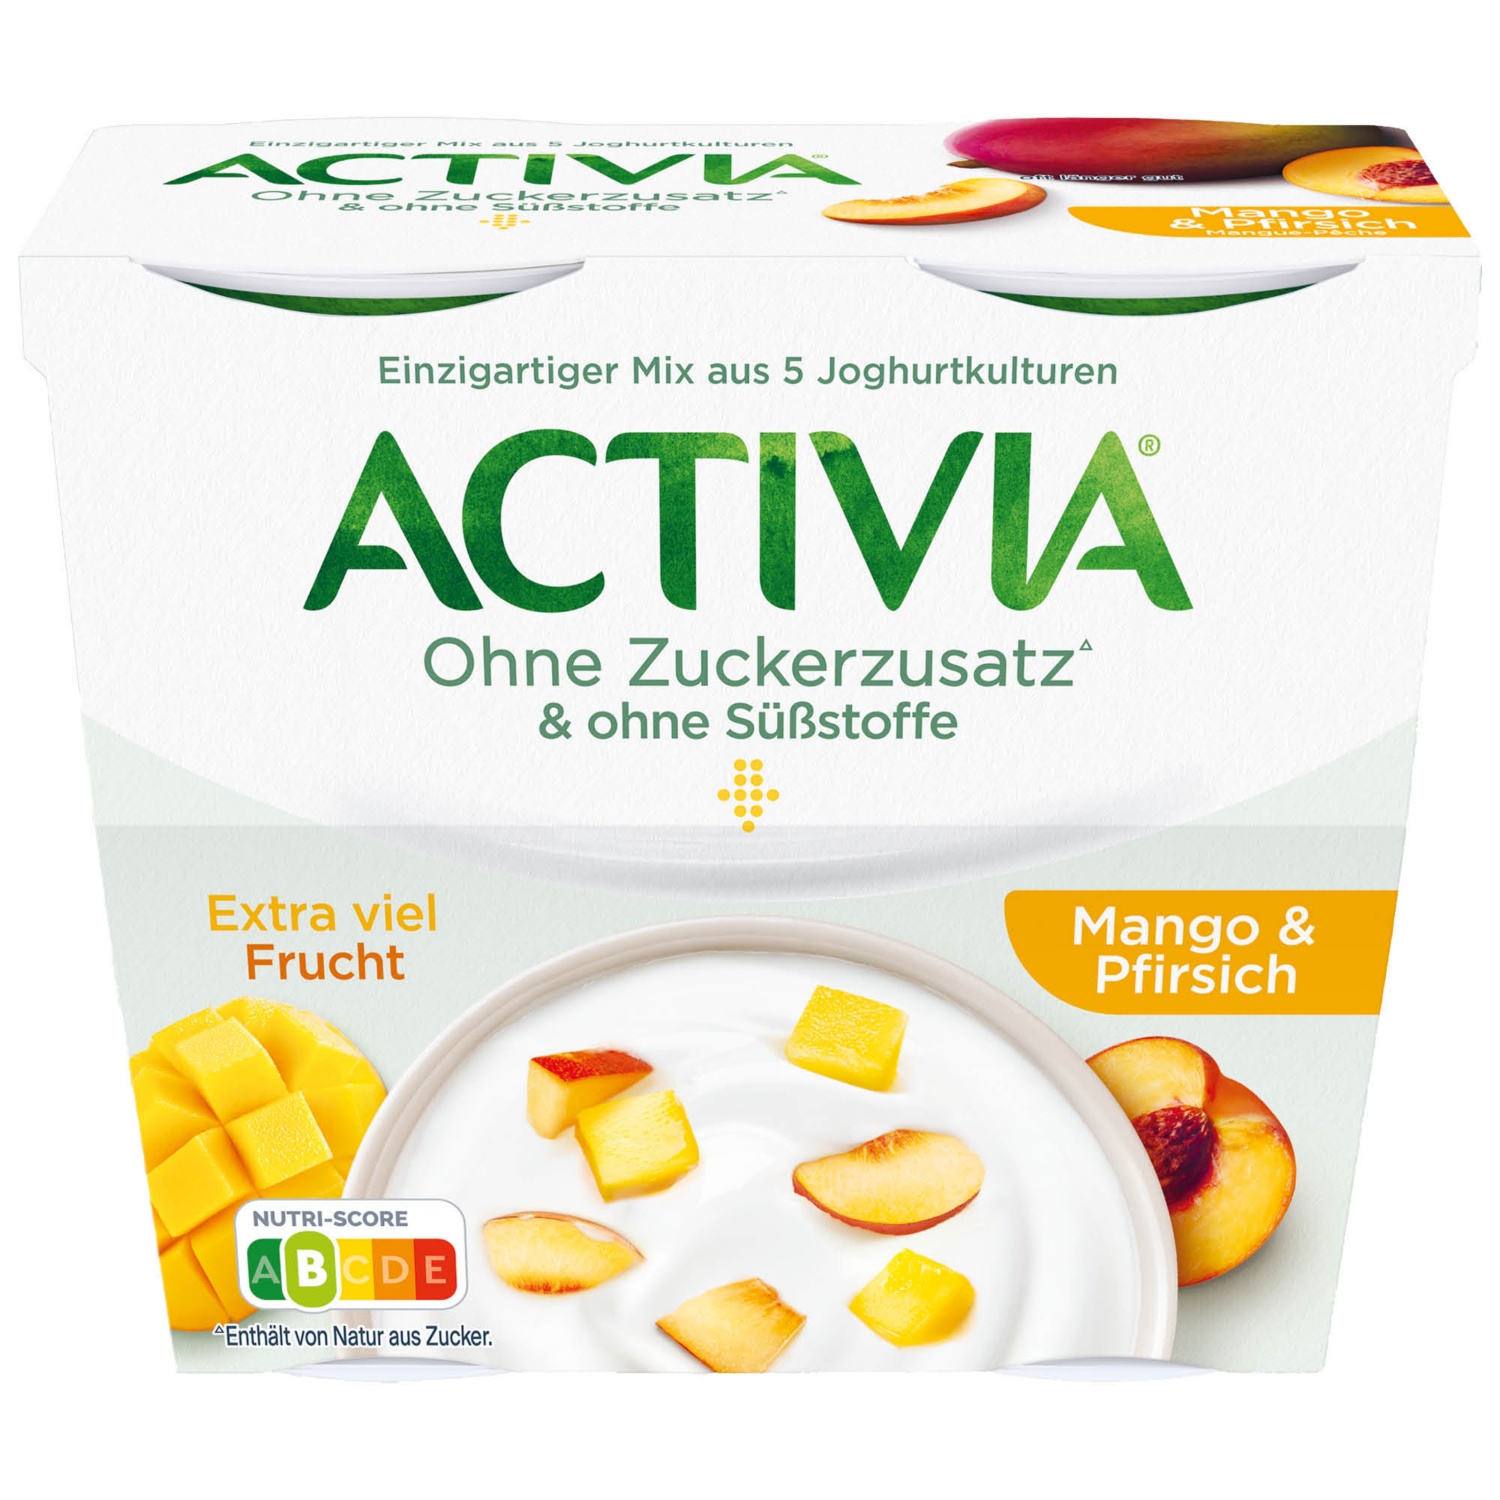 DANONE Activia ohne Zucker, Mango-Pfirsich